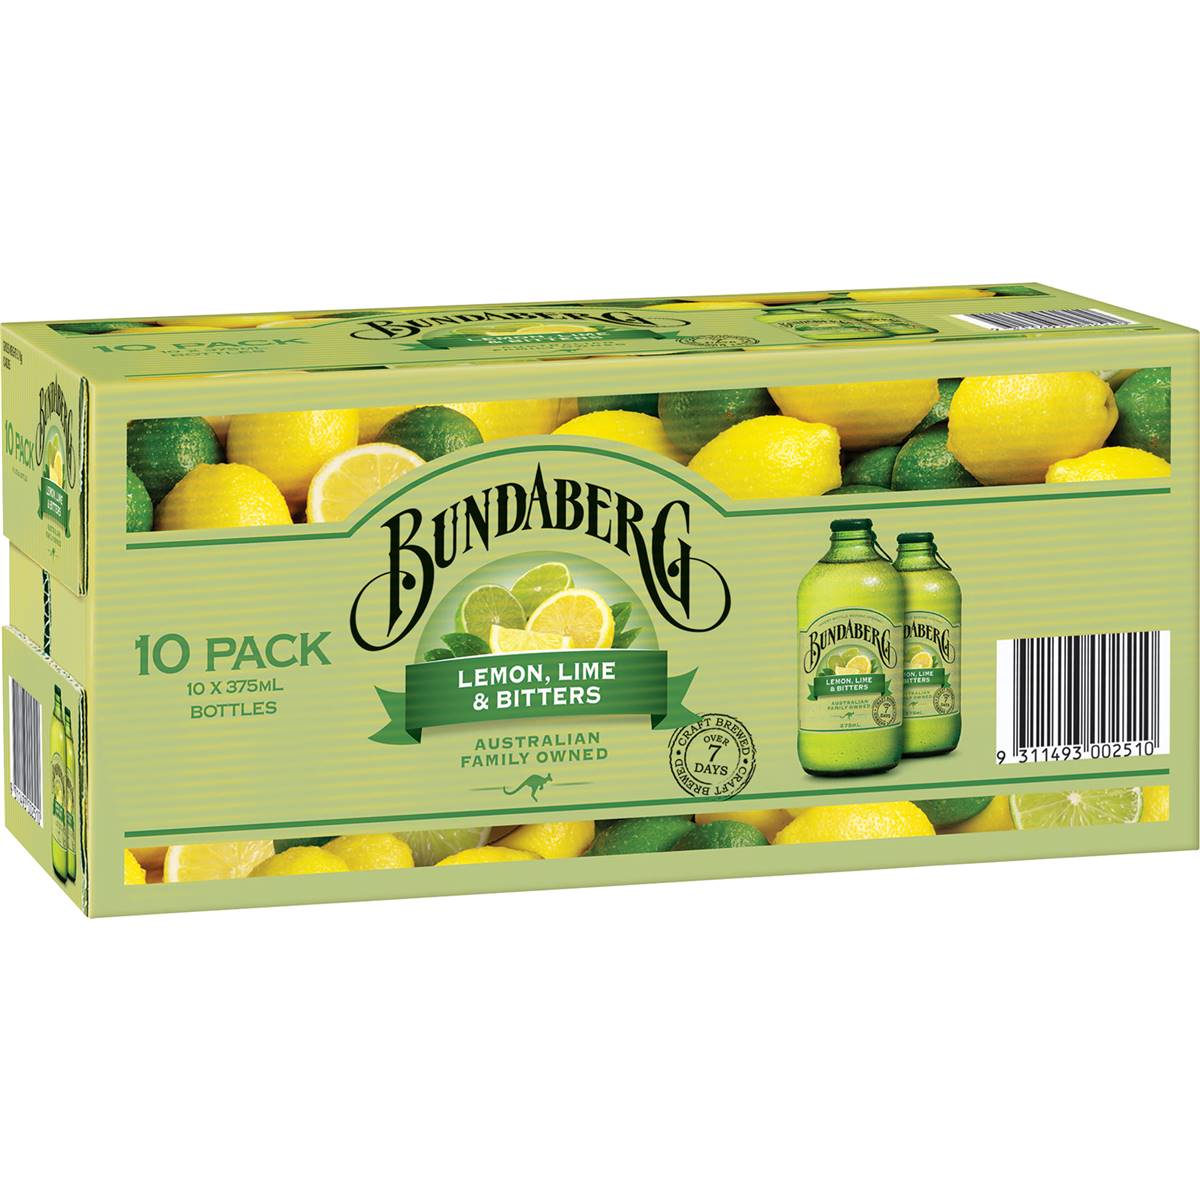 Bundaberg Lemon Lime & Bitters Bottles 10x375ml